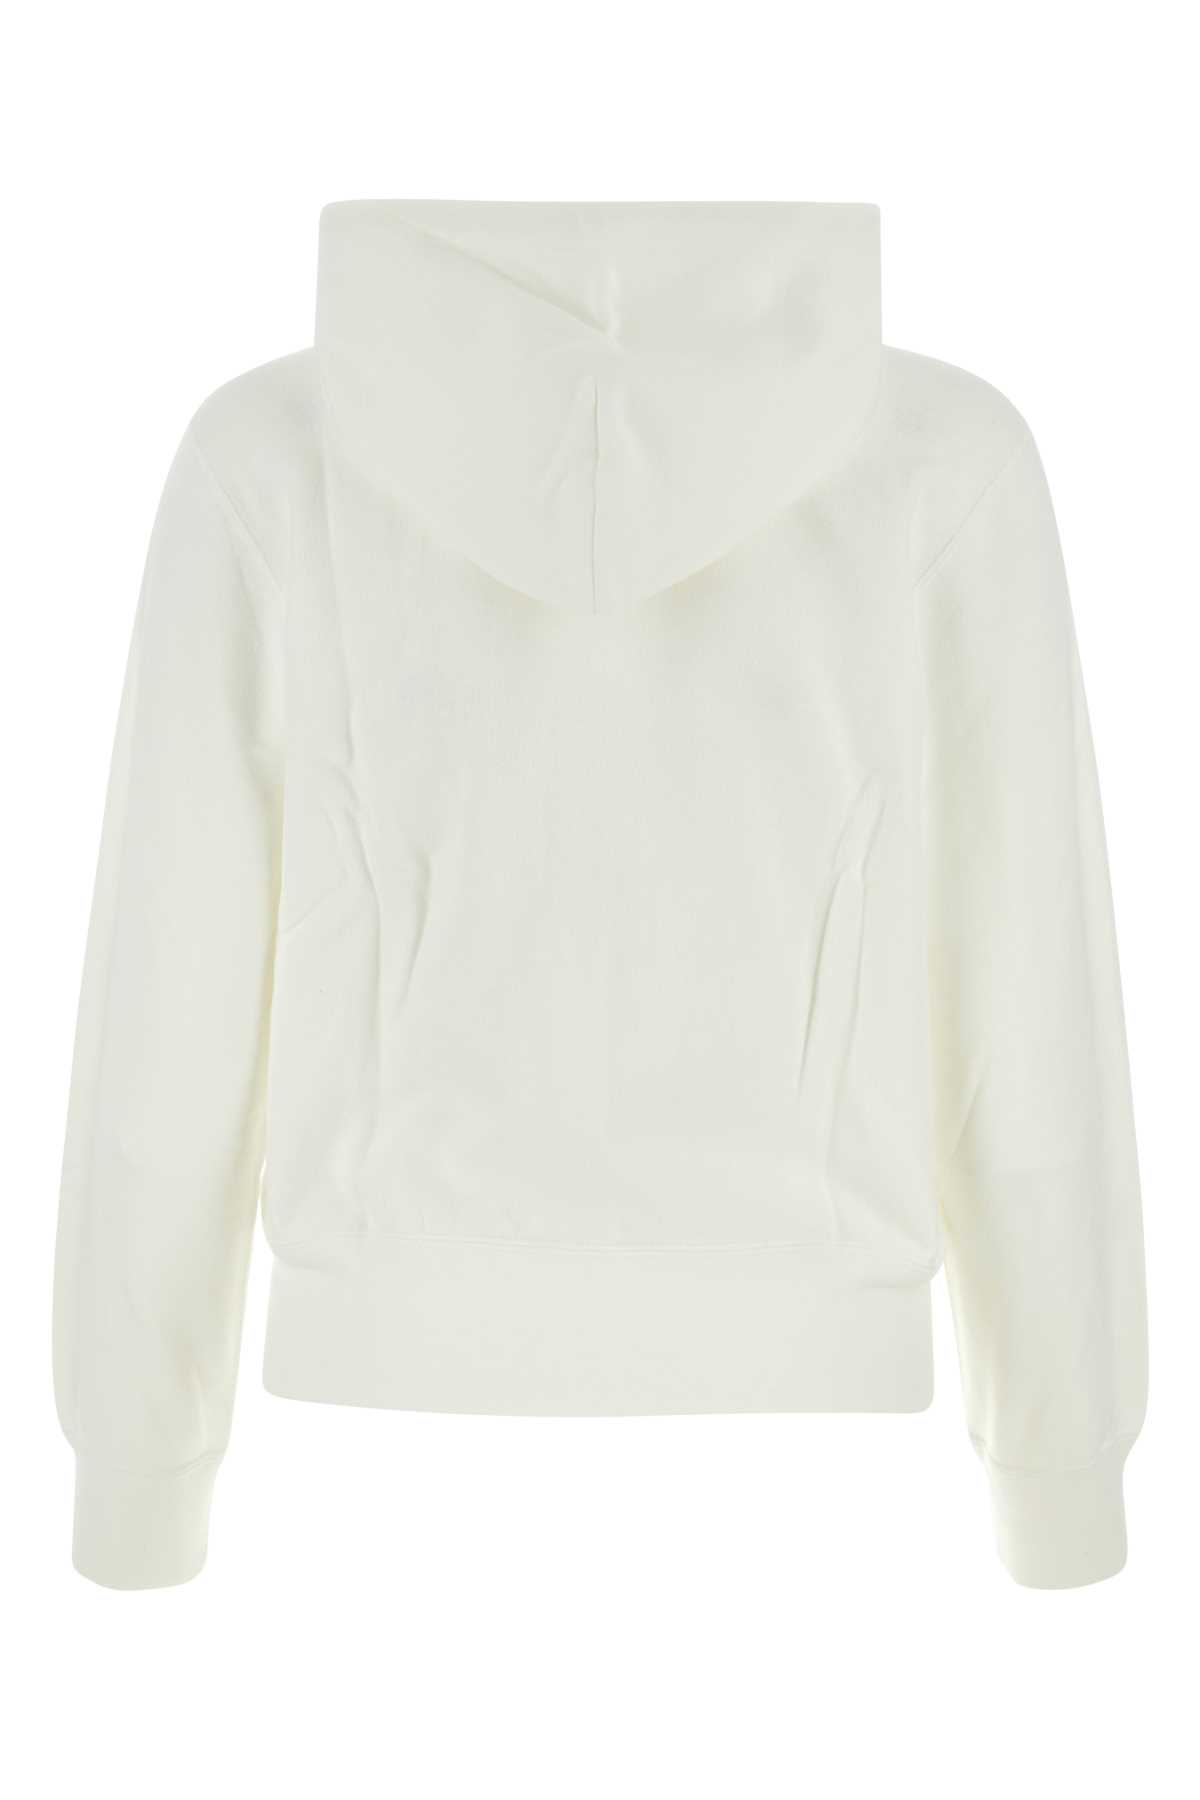 Shop Comme Des Garçons Play White Cotton Sweatshirt